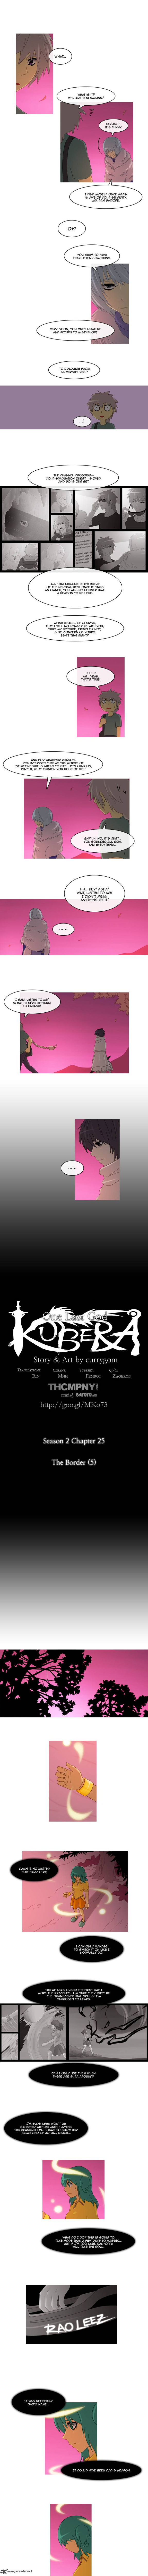 Kubera Chapter 125 Page 1